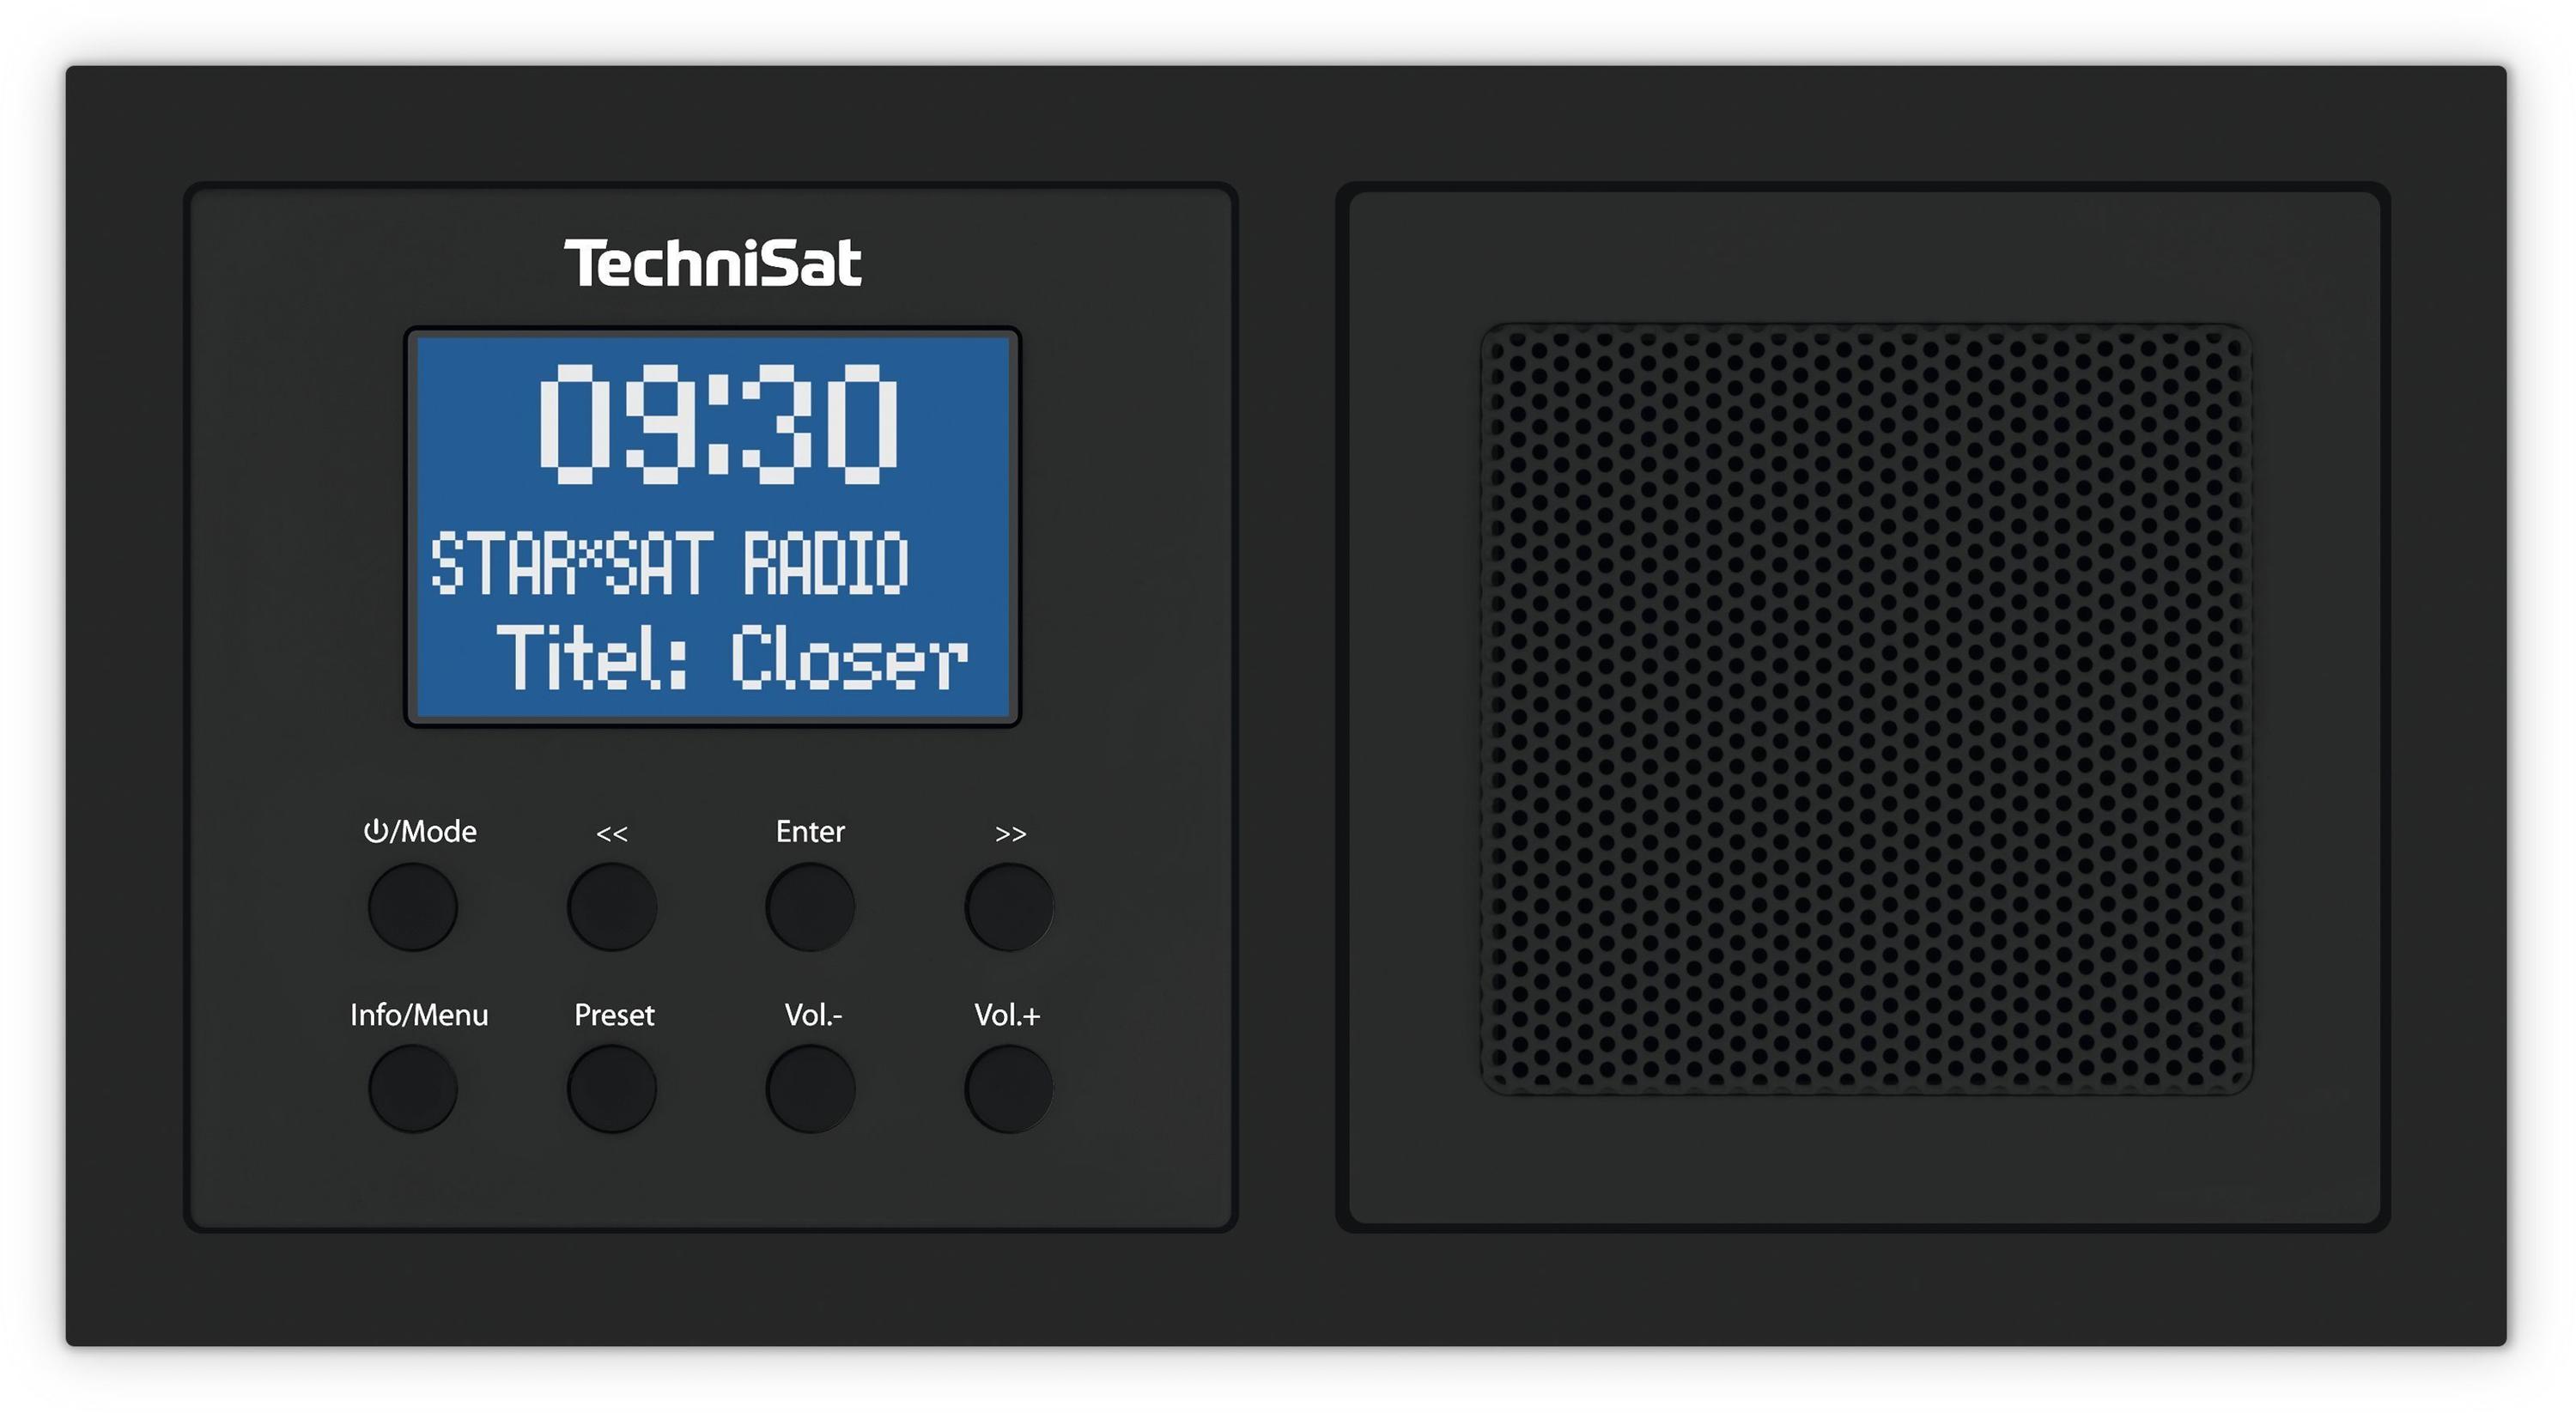 TechniSat DIGITRADIO UP 1 schwarz Test ❤️ Jetzt ab 91,11 € (Mai 2022)  Testbericht.de